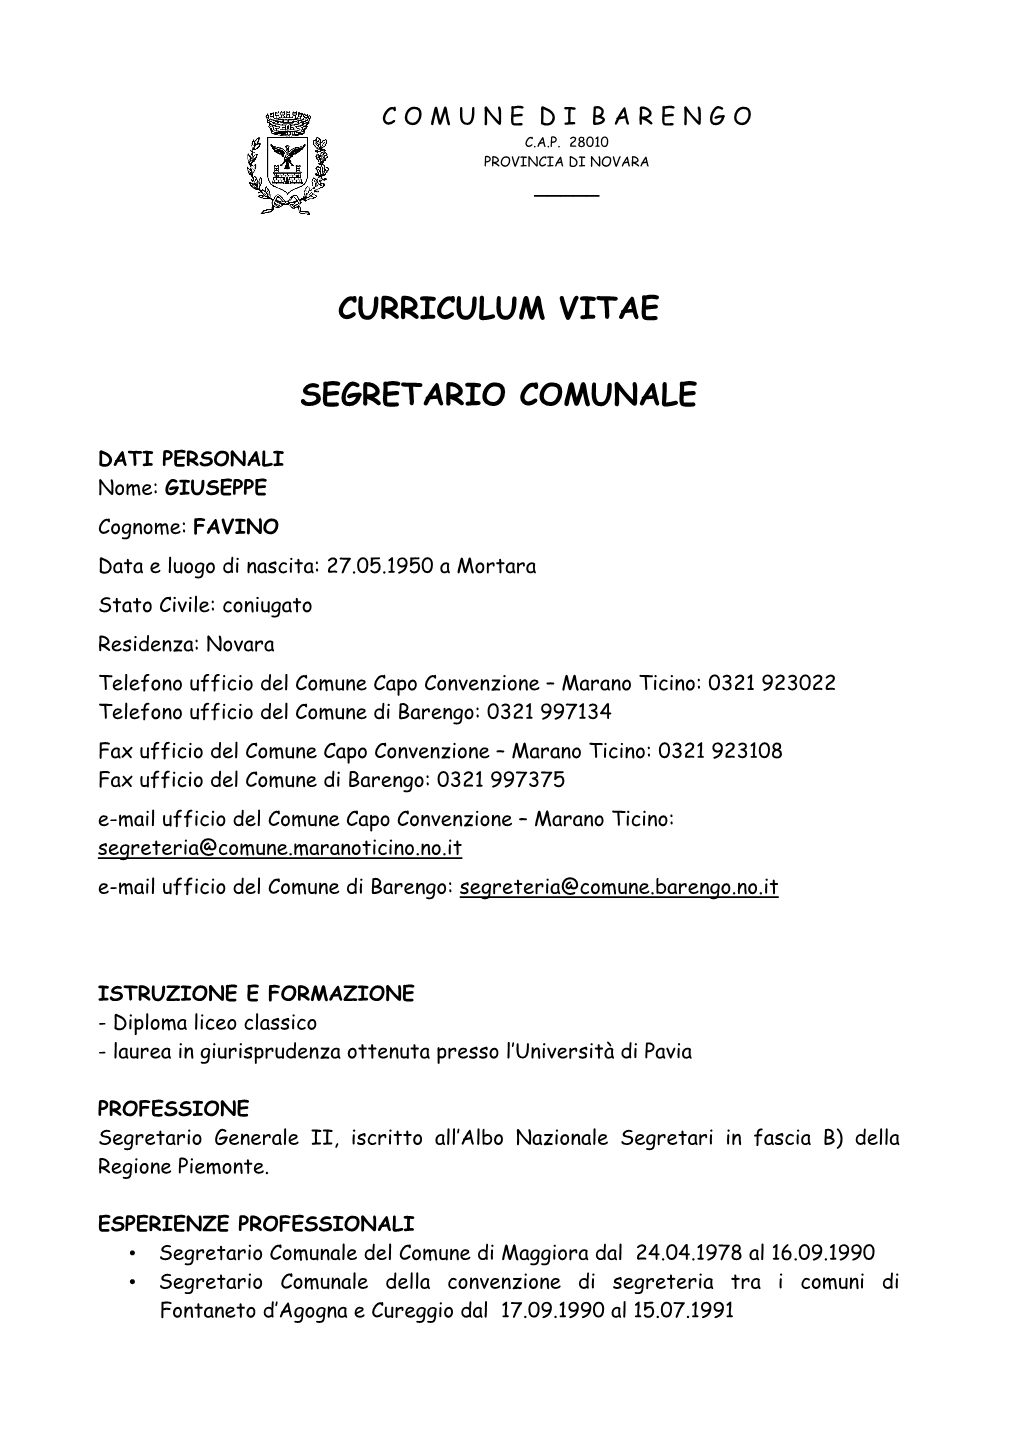 Curriculum Vitae Segretario Comunale.Pdf